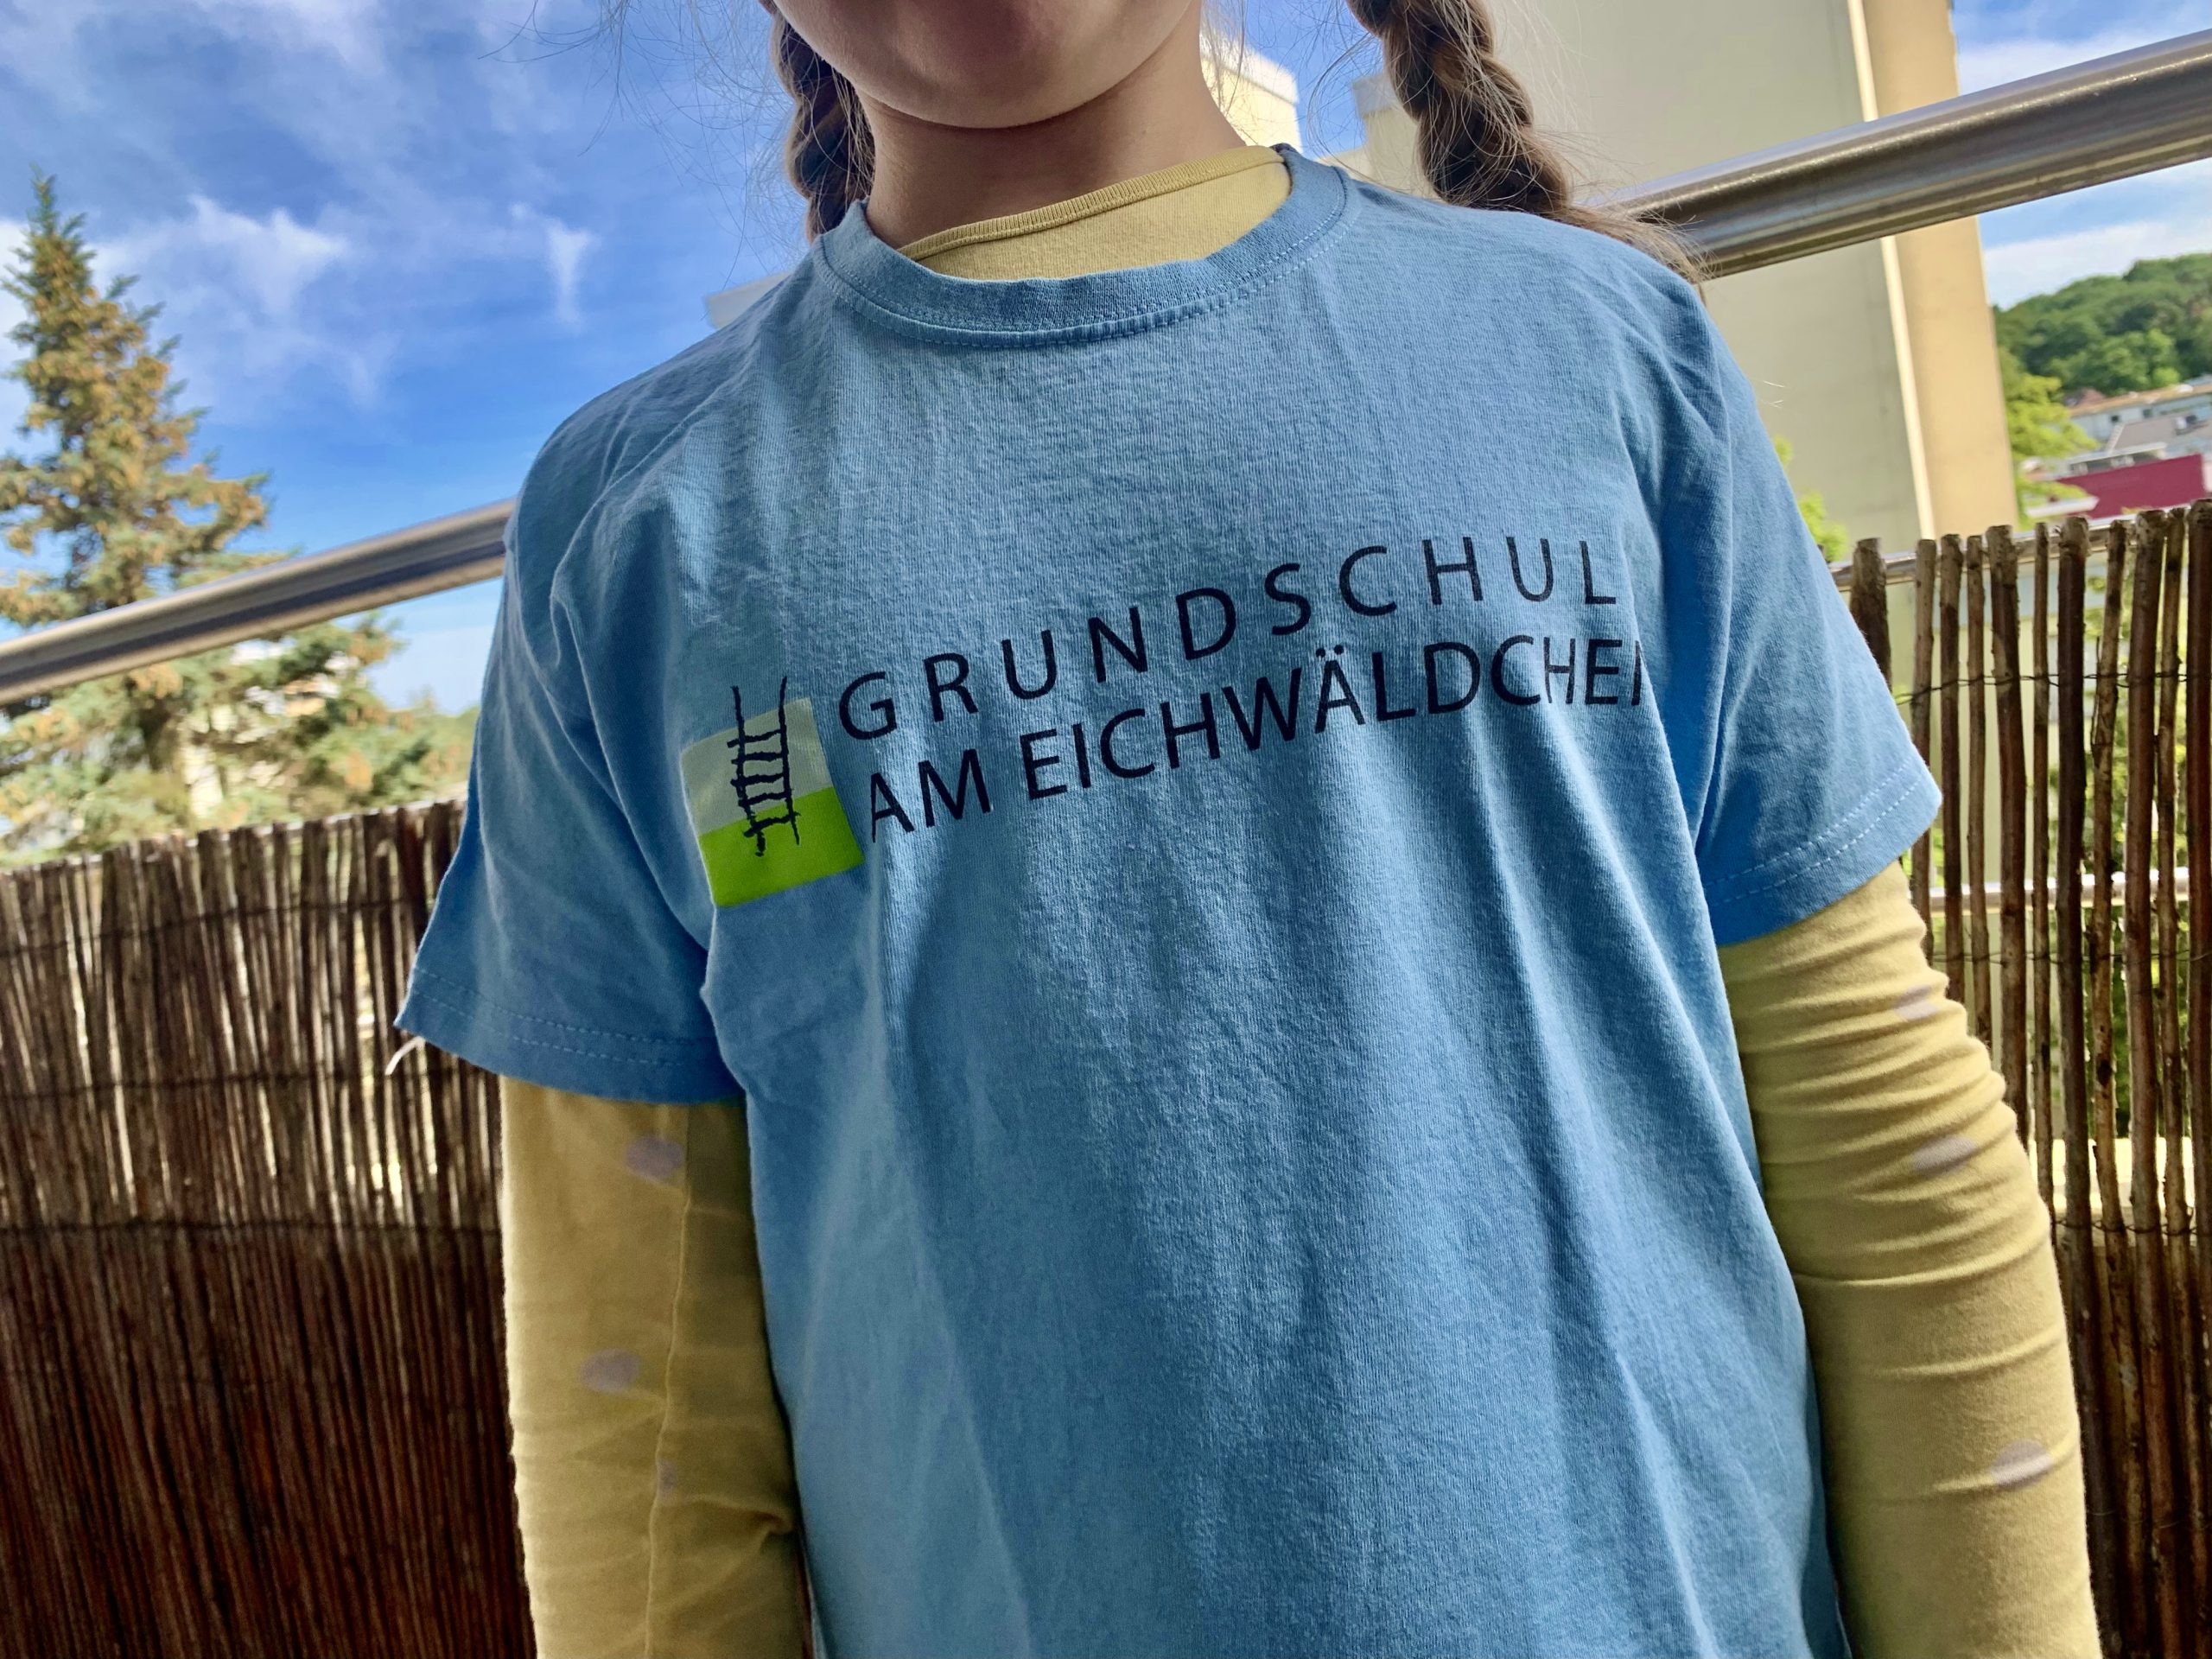 Schul-T-Shirt der Grundschule am Eichwäldchen